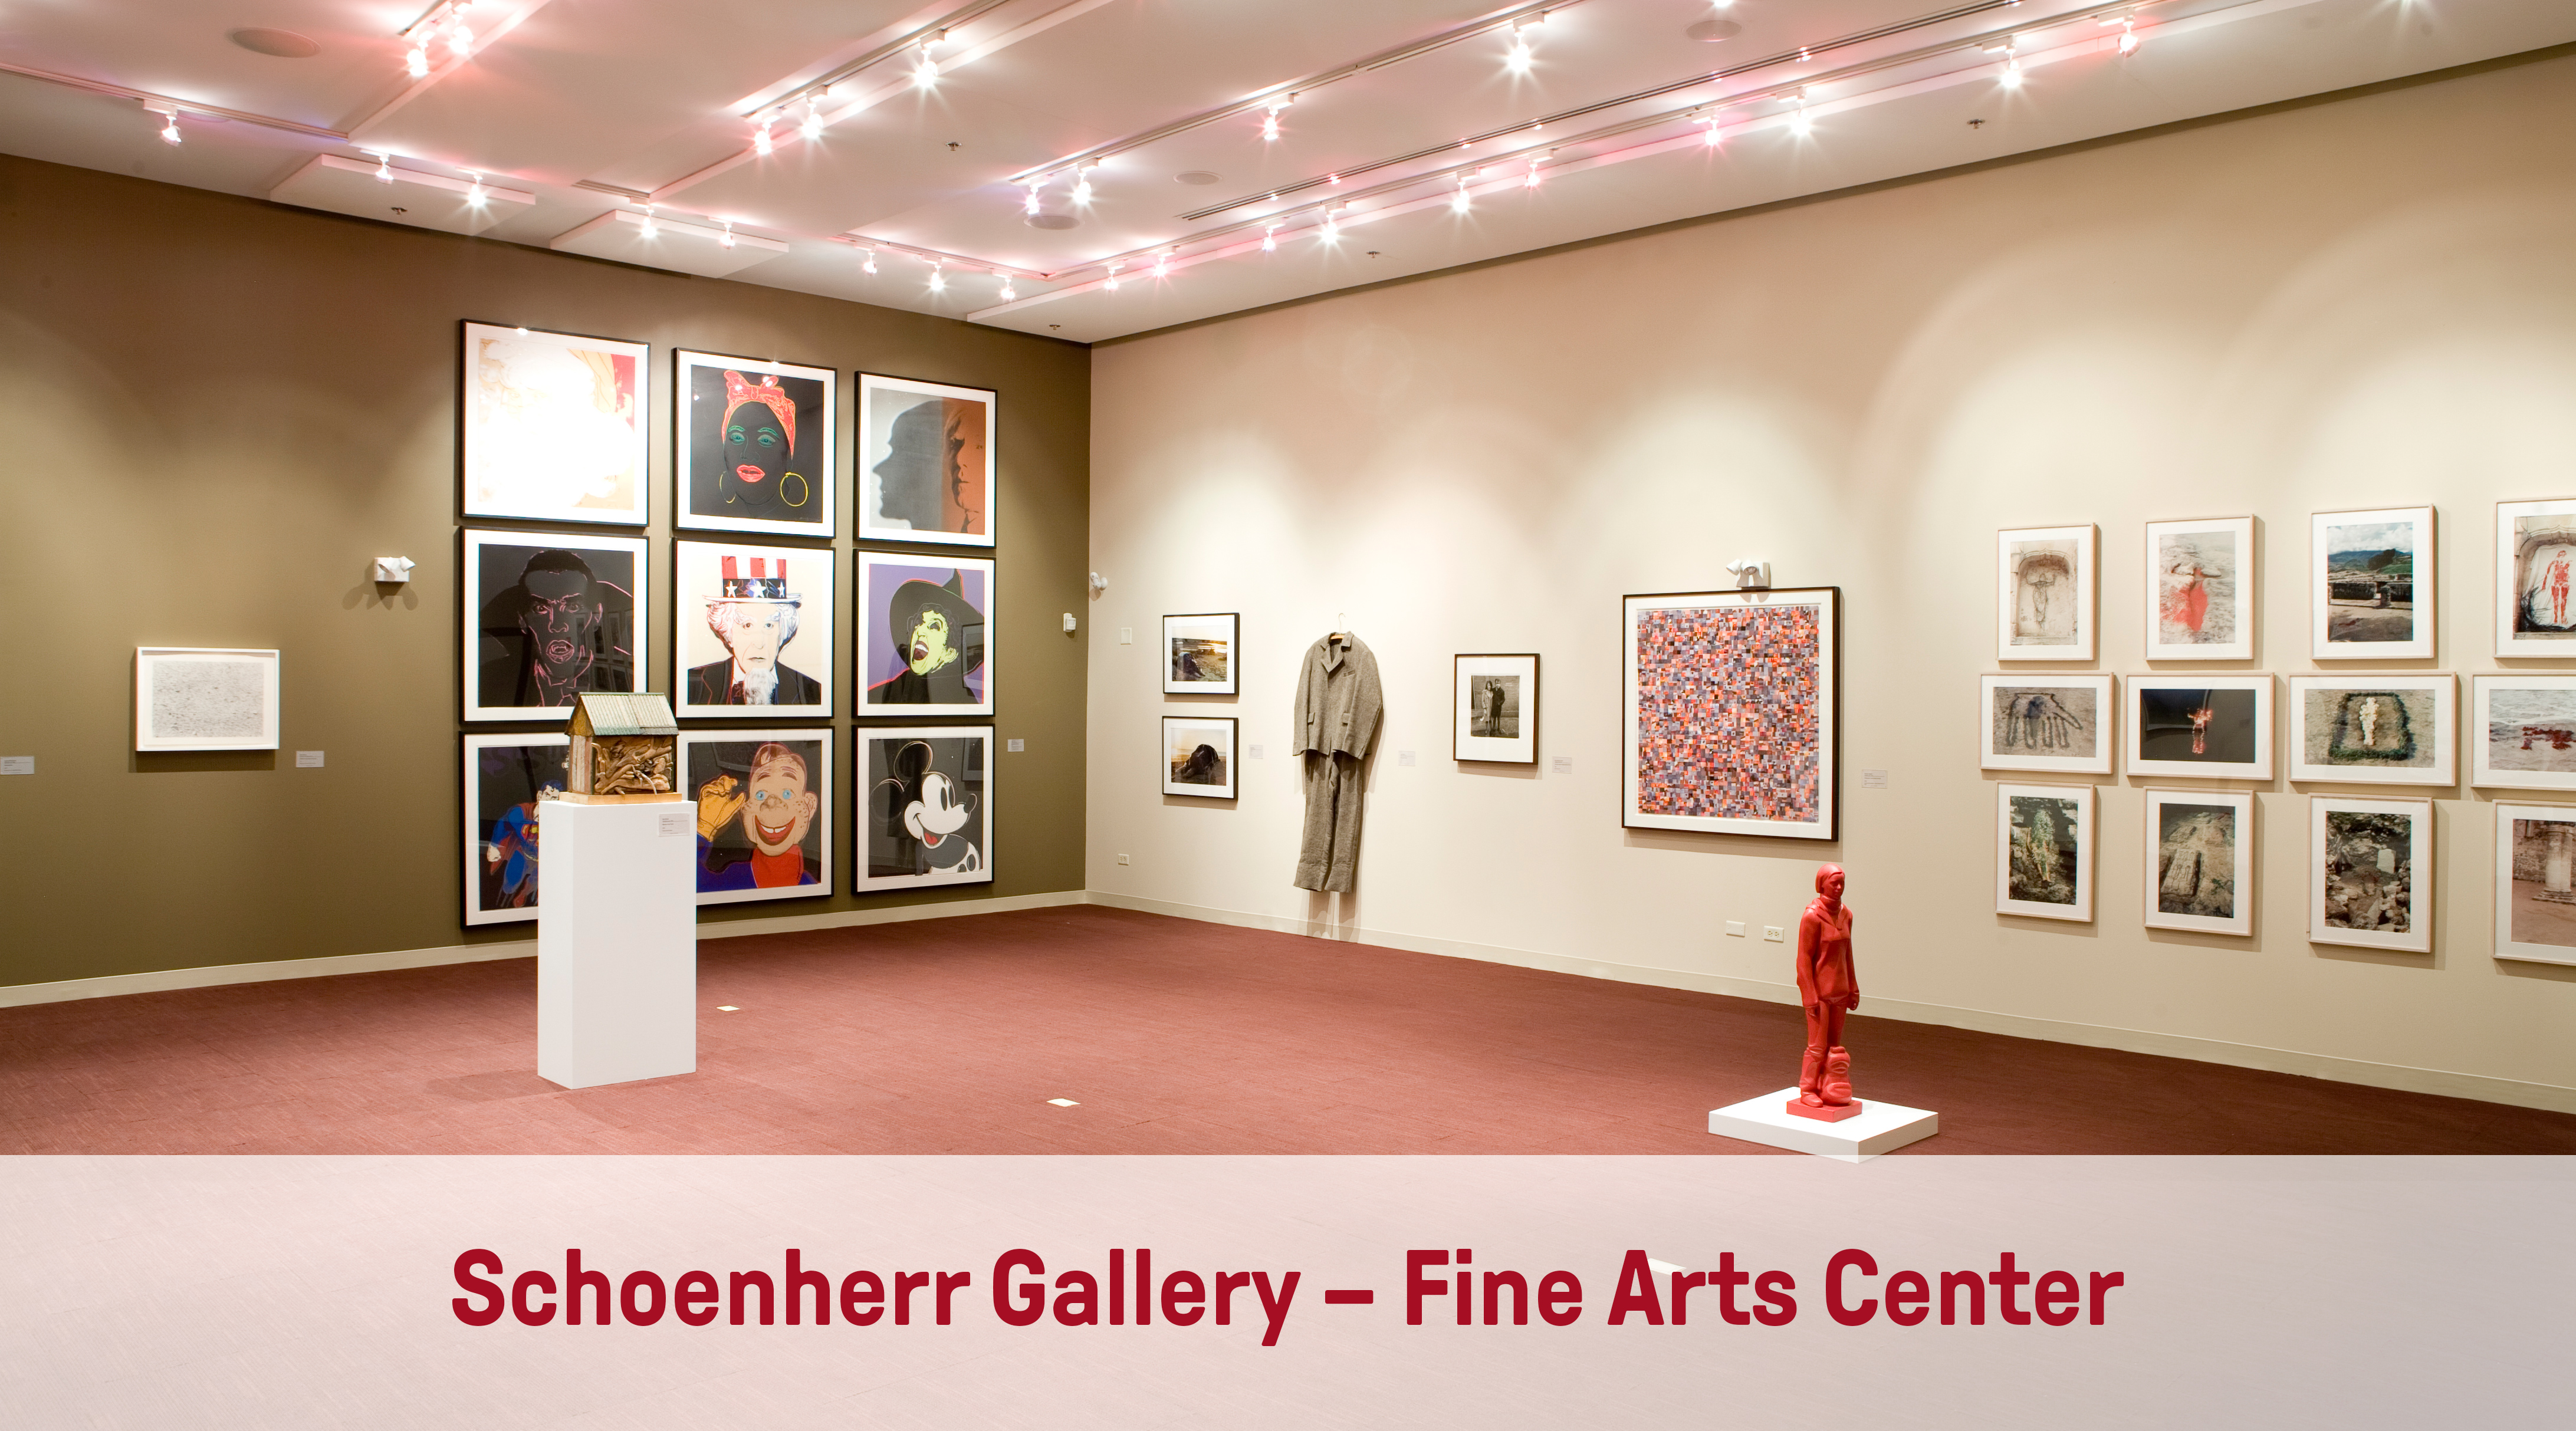 Schoenherr Gallery – Fine Arts Center